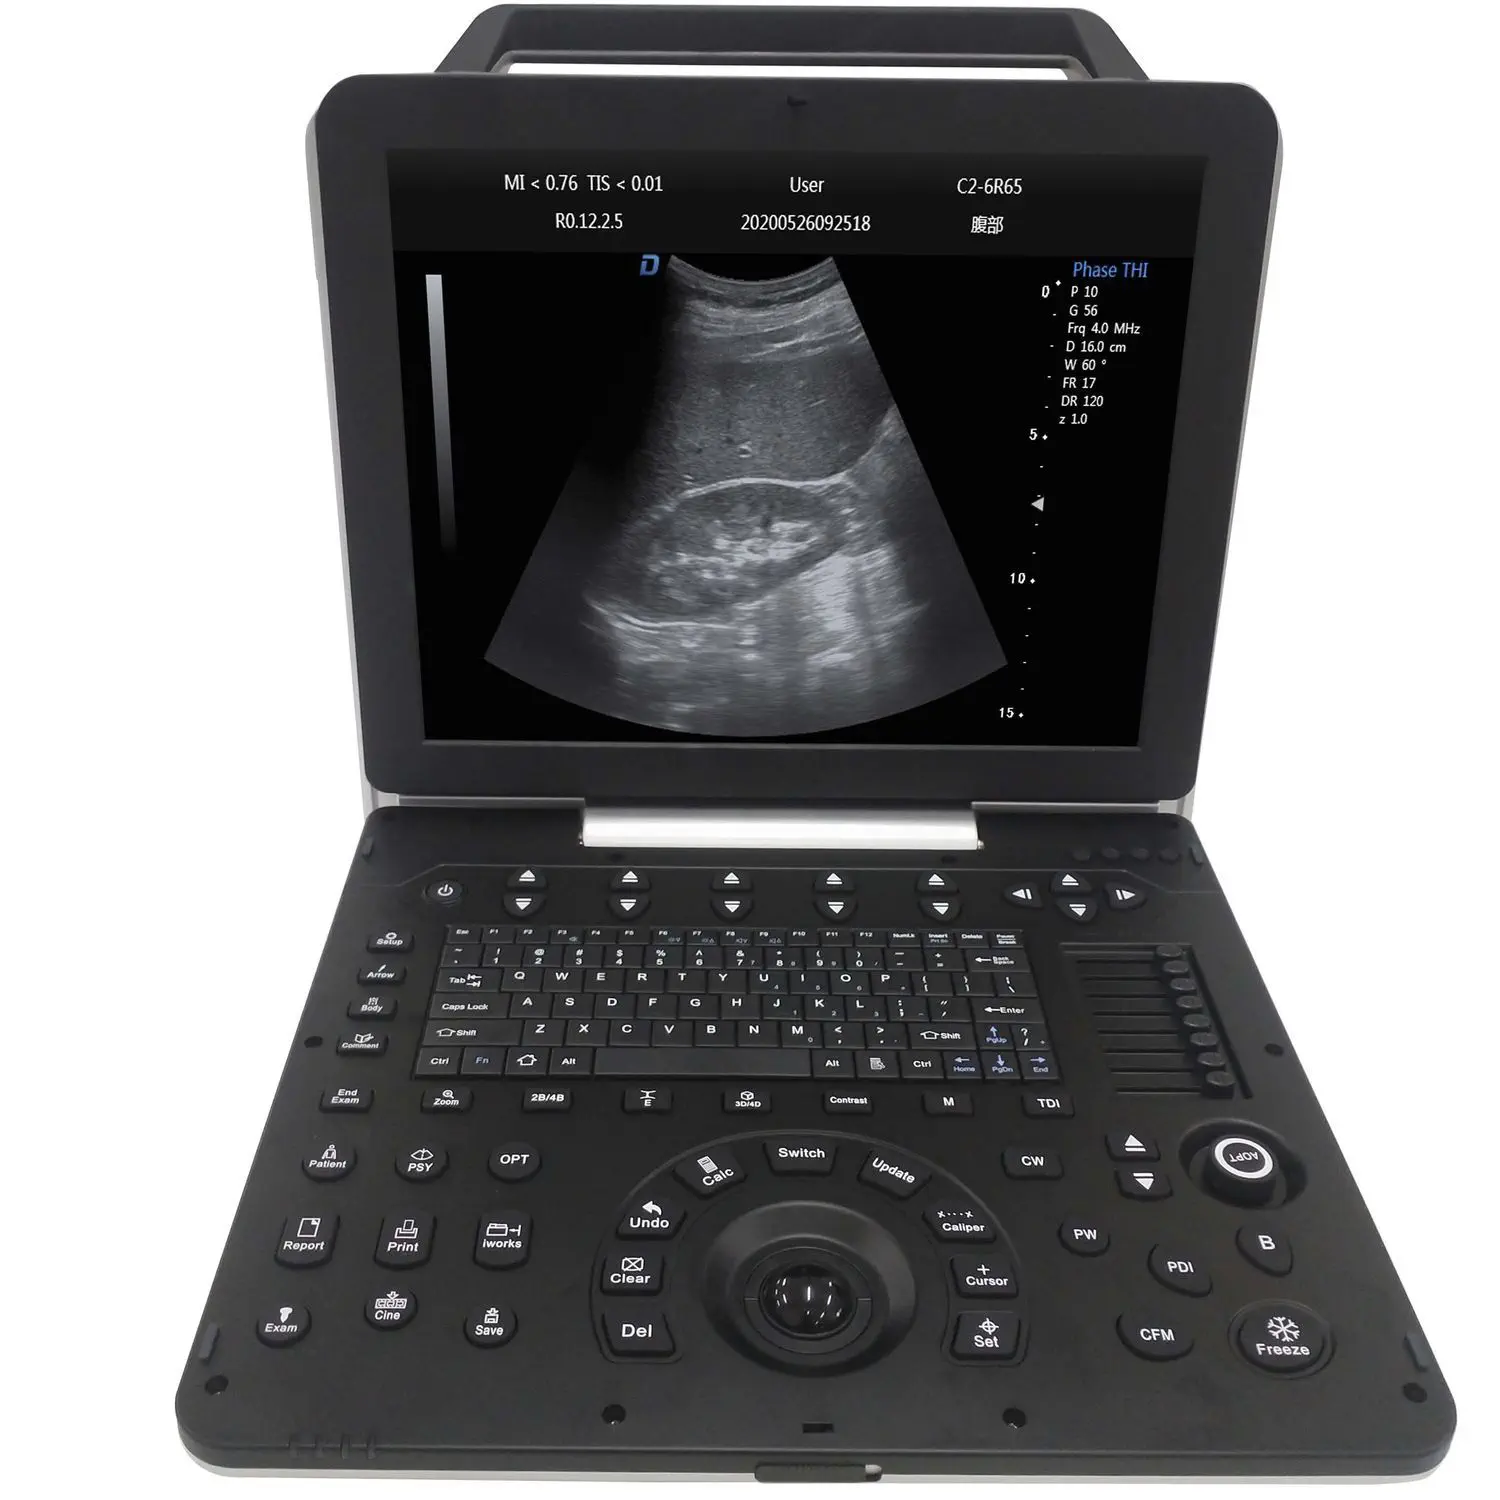 เครื่องฟังเสียงหลอดเลือดด้วยคลื่นเสียงความถี่สูงชนิดพกพา  Multipurpose ultrasound imaging system DW-P8  Dawei